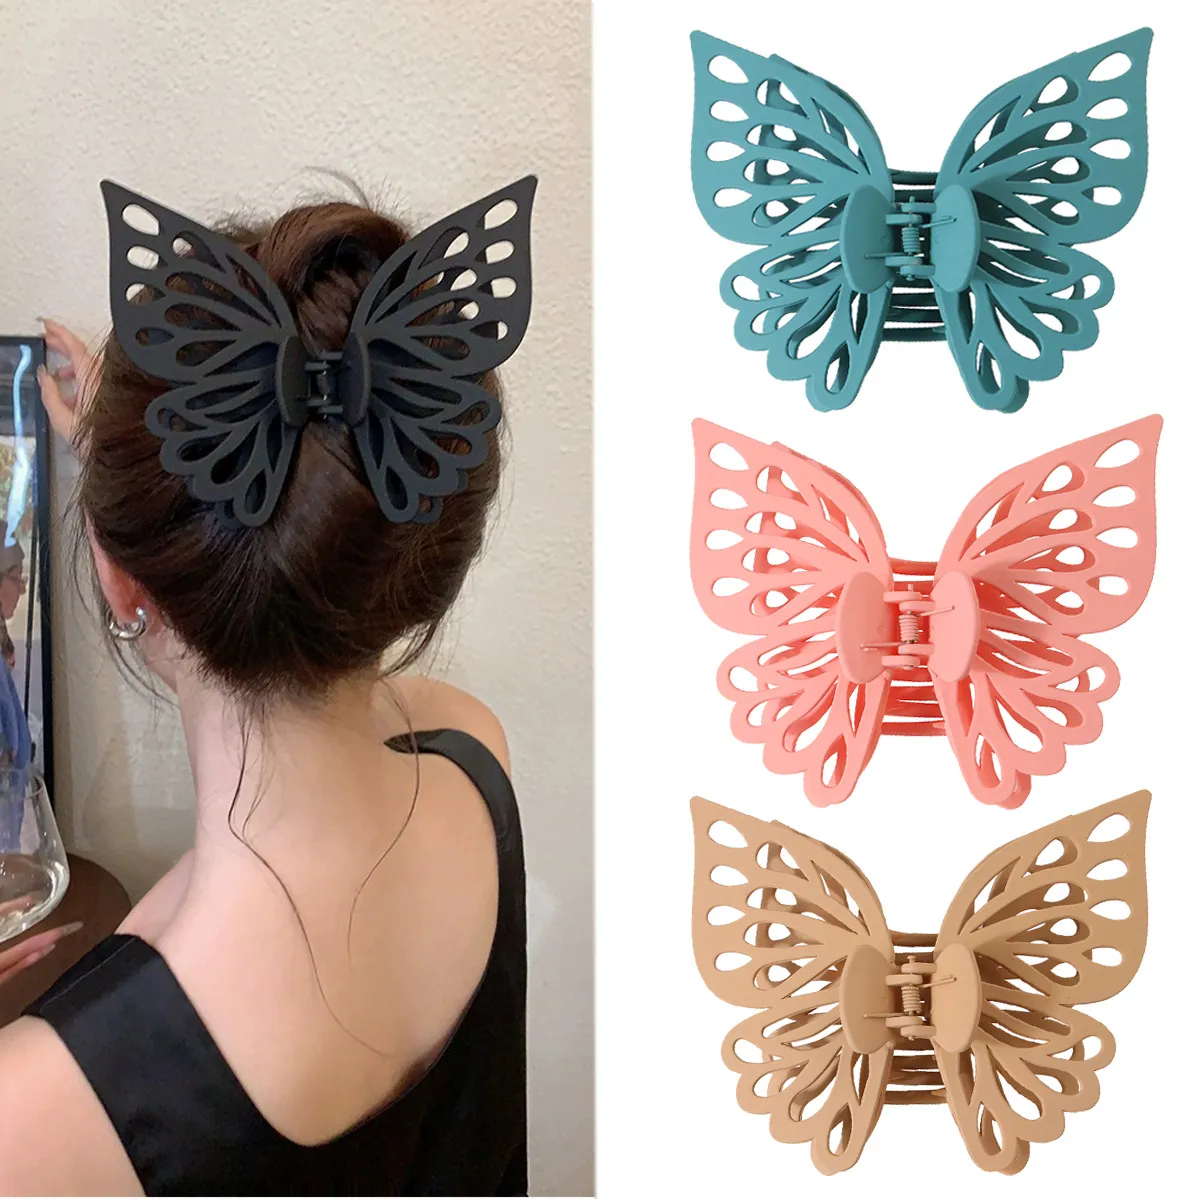 Doppelte Schichten aushöhlen, große Schmetterlings-Haarklammern für Haarstyling, dekorative, ausgefallene Haar-Accessoires, Hai-Clips für Mädchen und Frauen, 2903